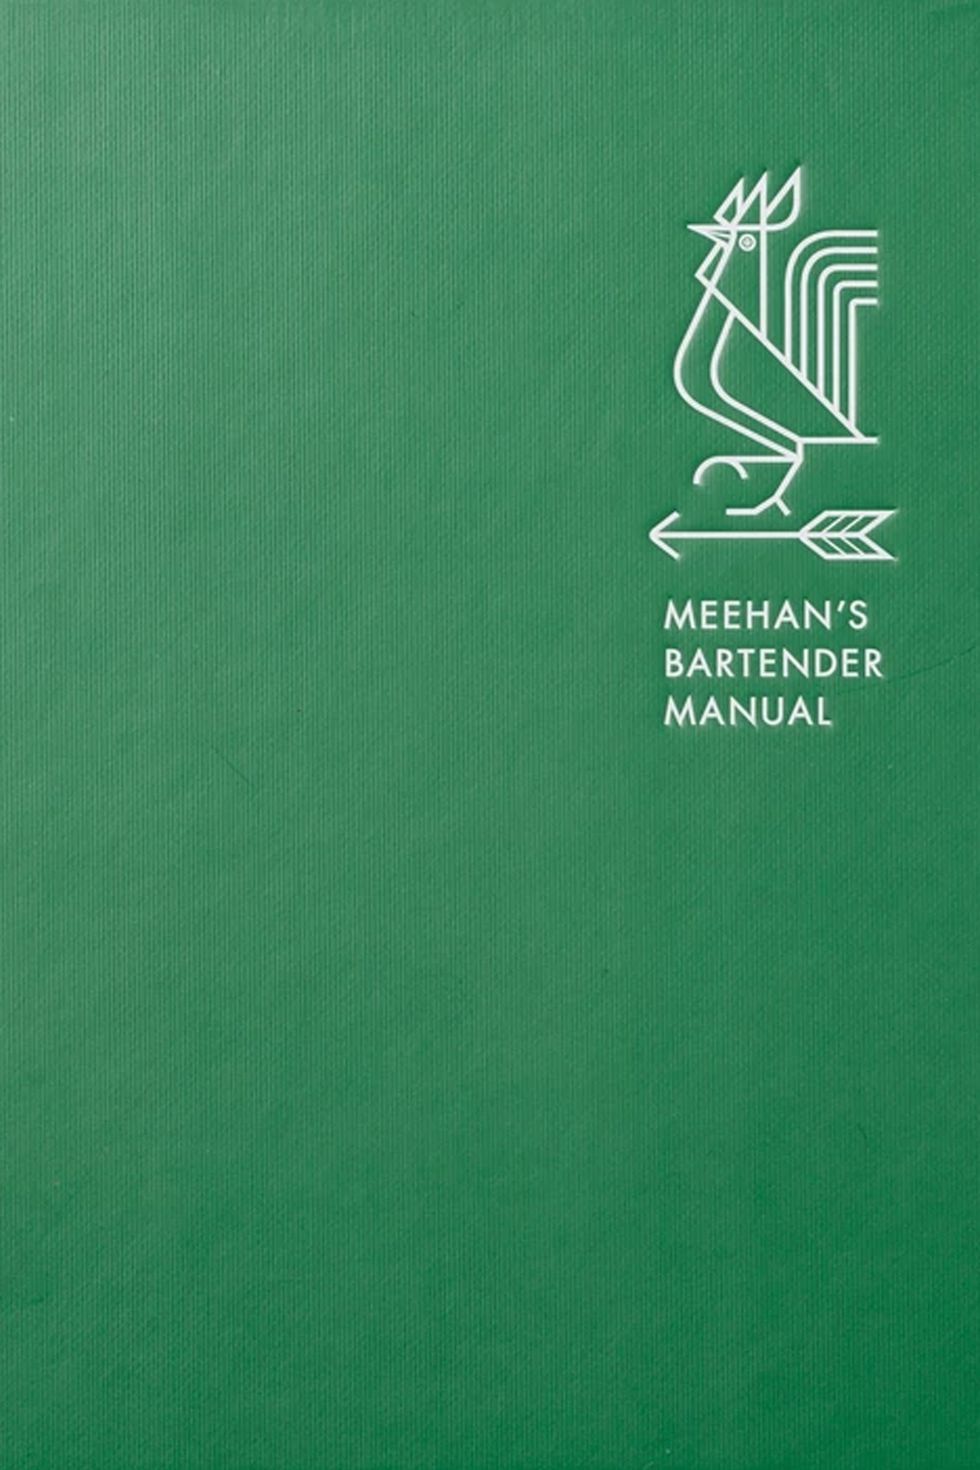 Meehan's Bartender Manual by Jim Meehan